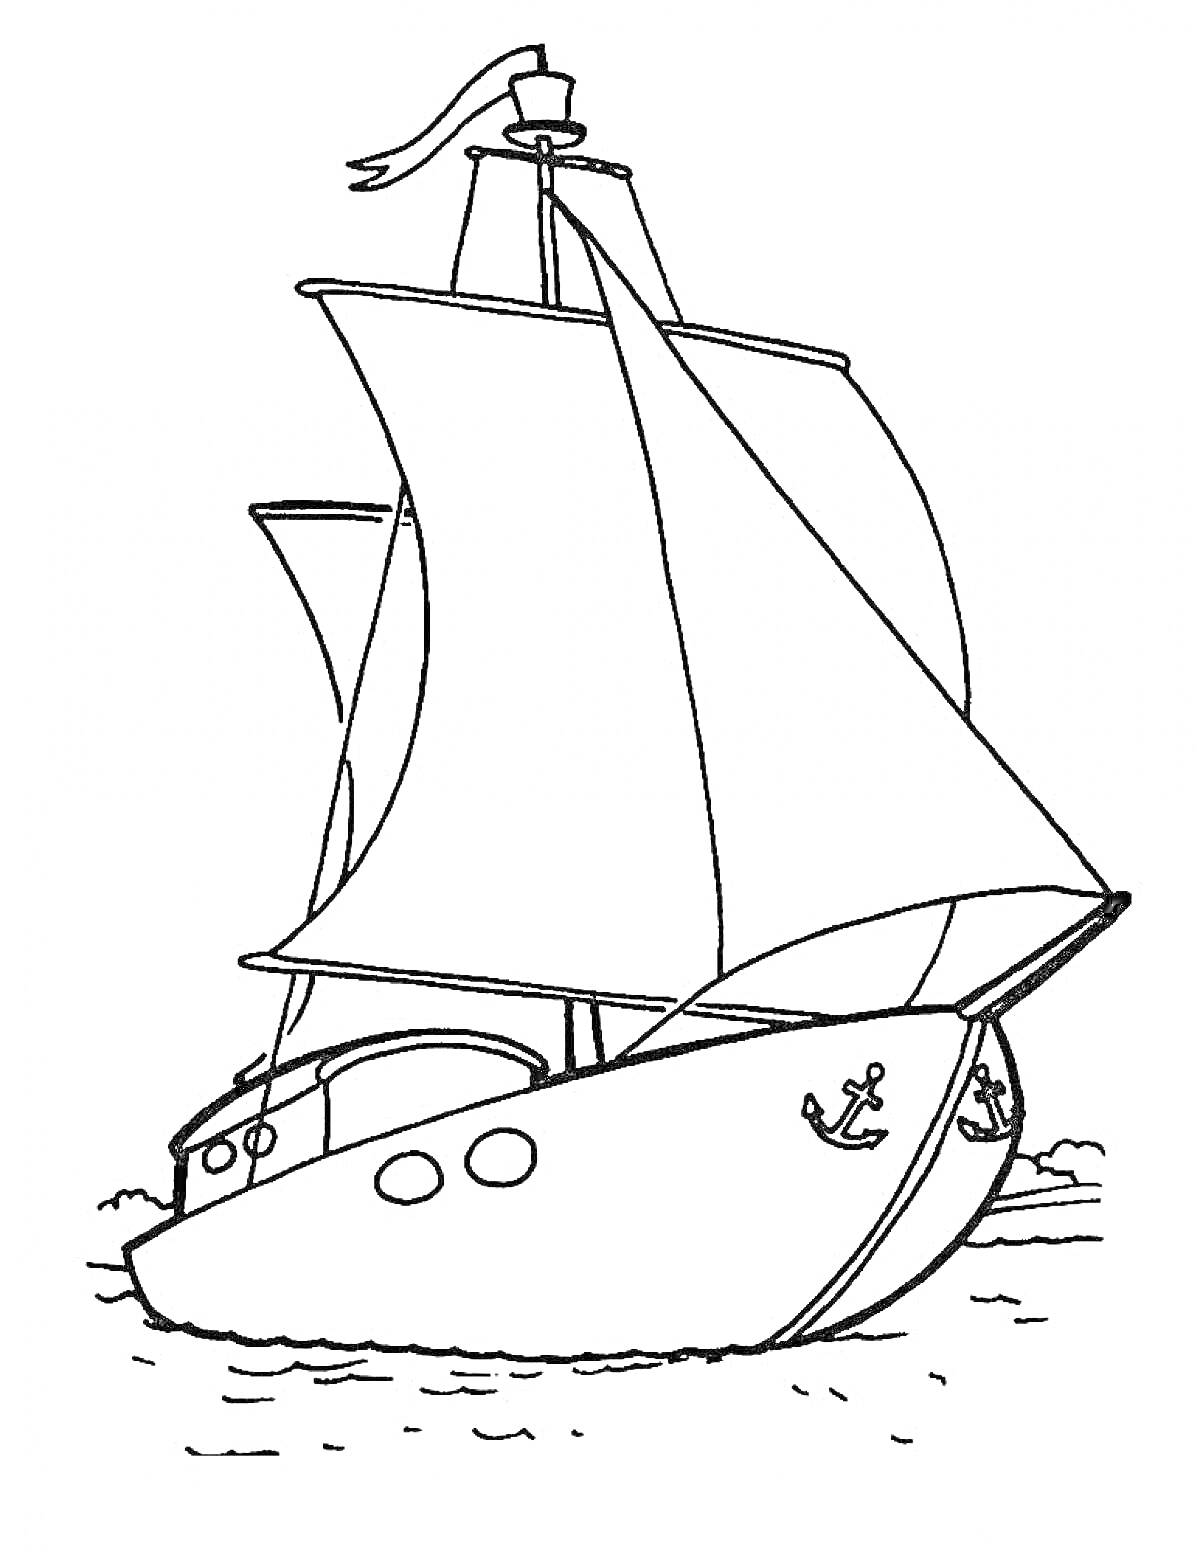 Раскраска Парусник с развернутыми парусами, двумя иллюминаторами, якорем и флагом, плывущий по волнам